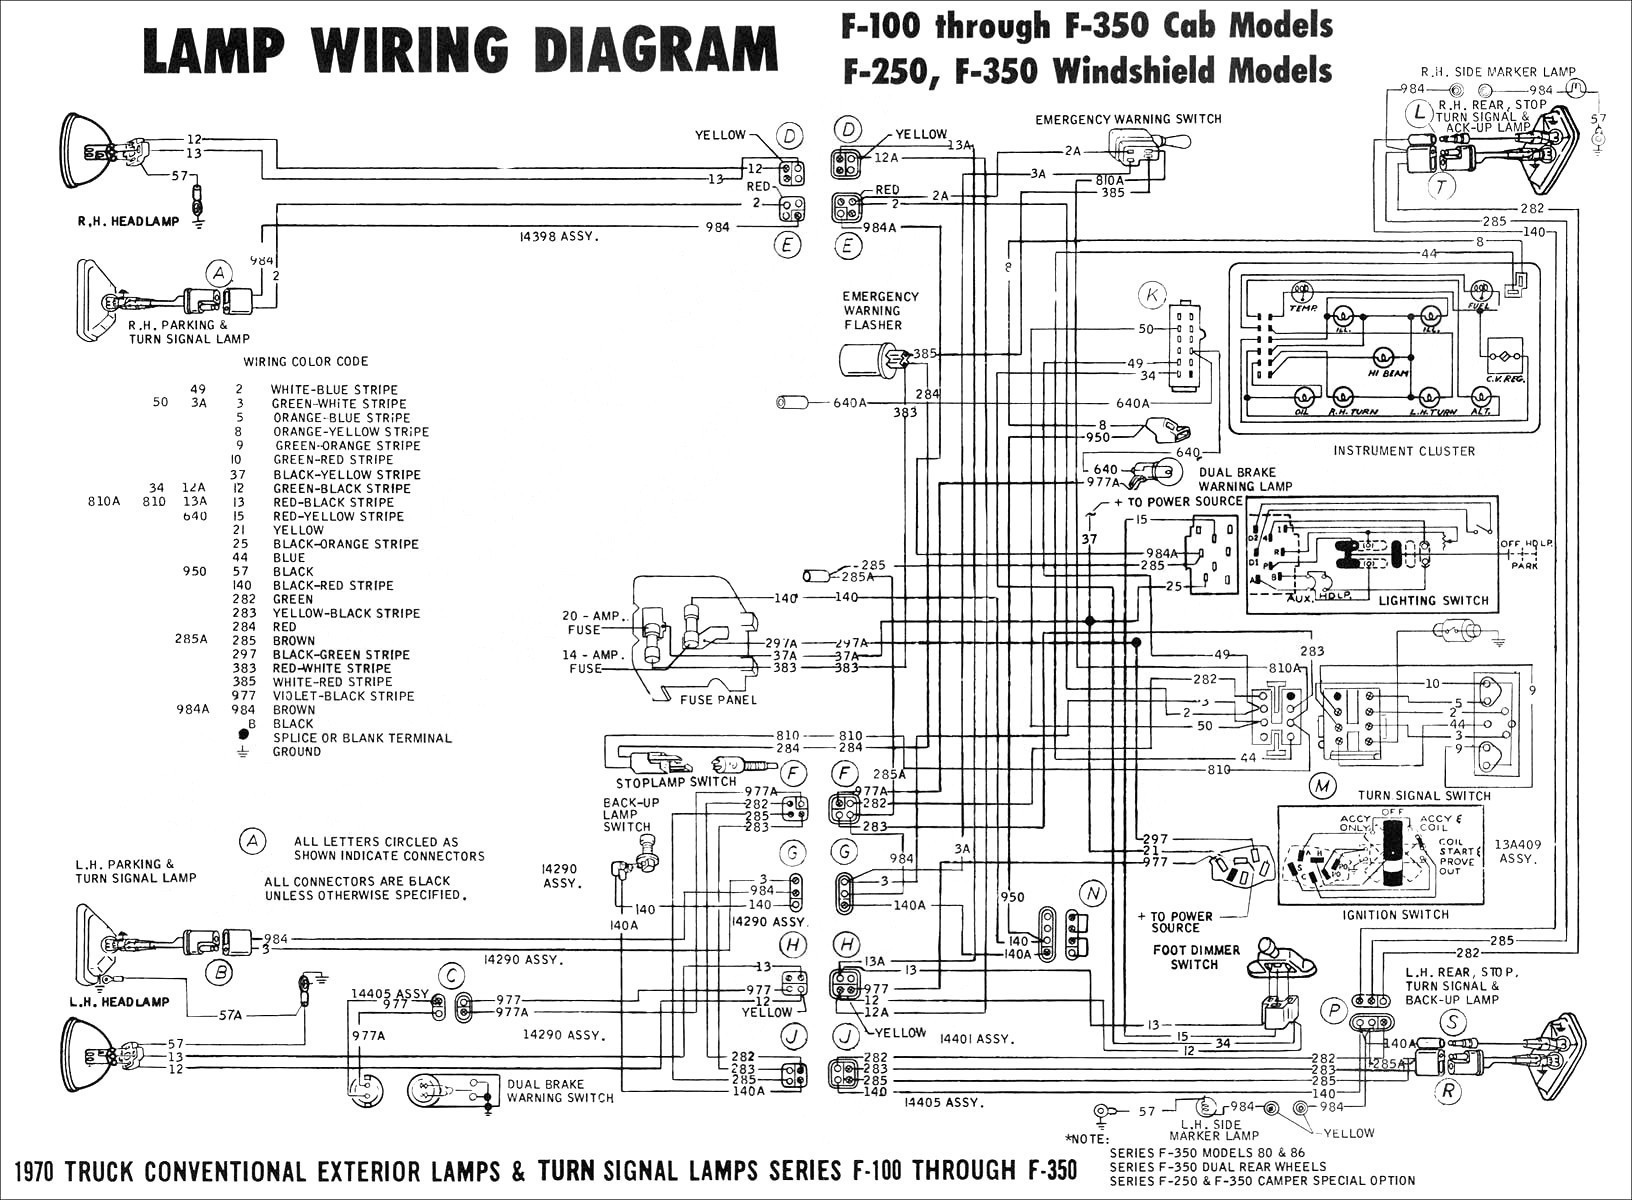 Car Amplifier Installation Diagram Wire Schematic Pg Amp E Symbols Of Car Amplifier Installation Diagram